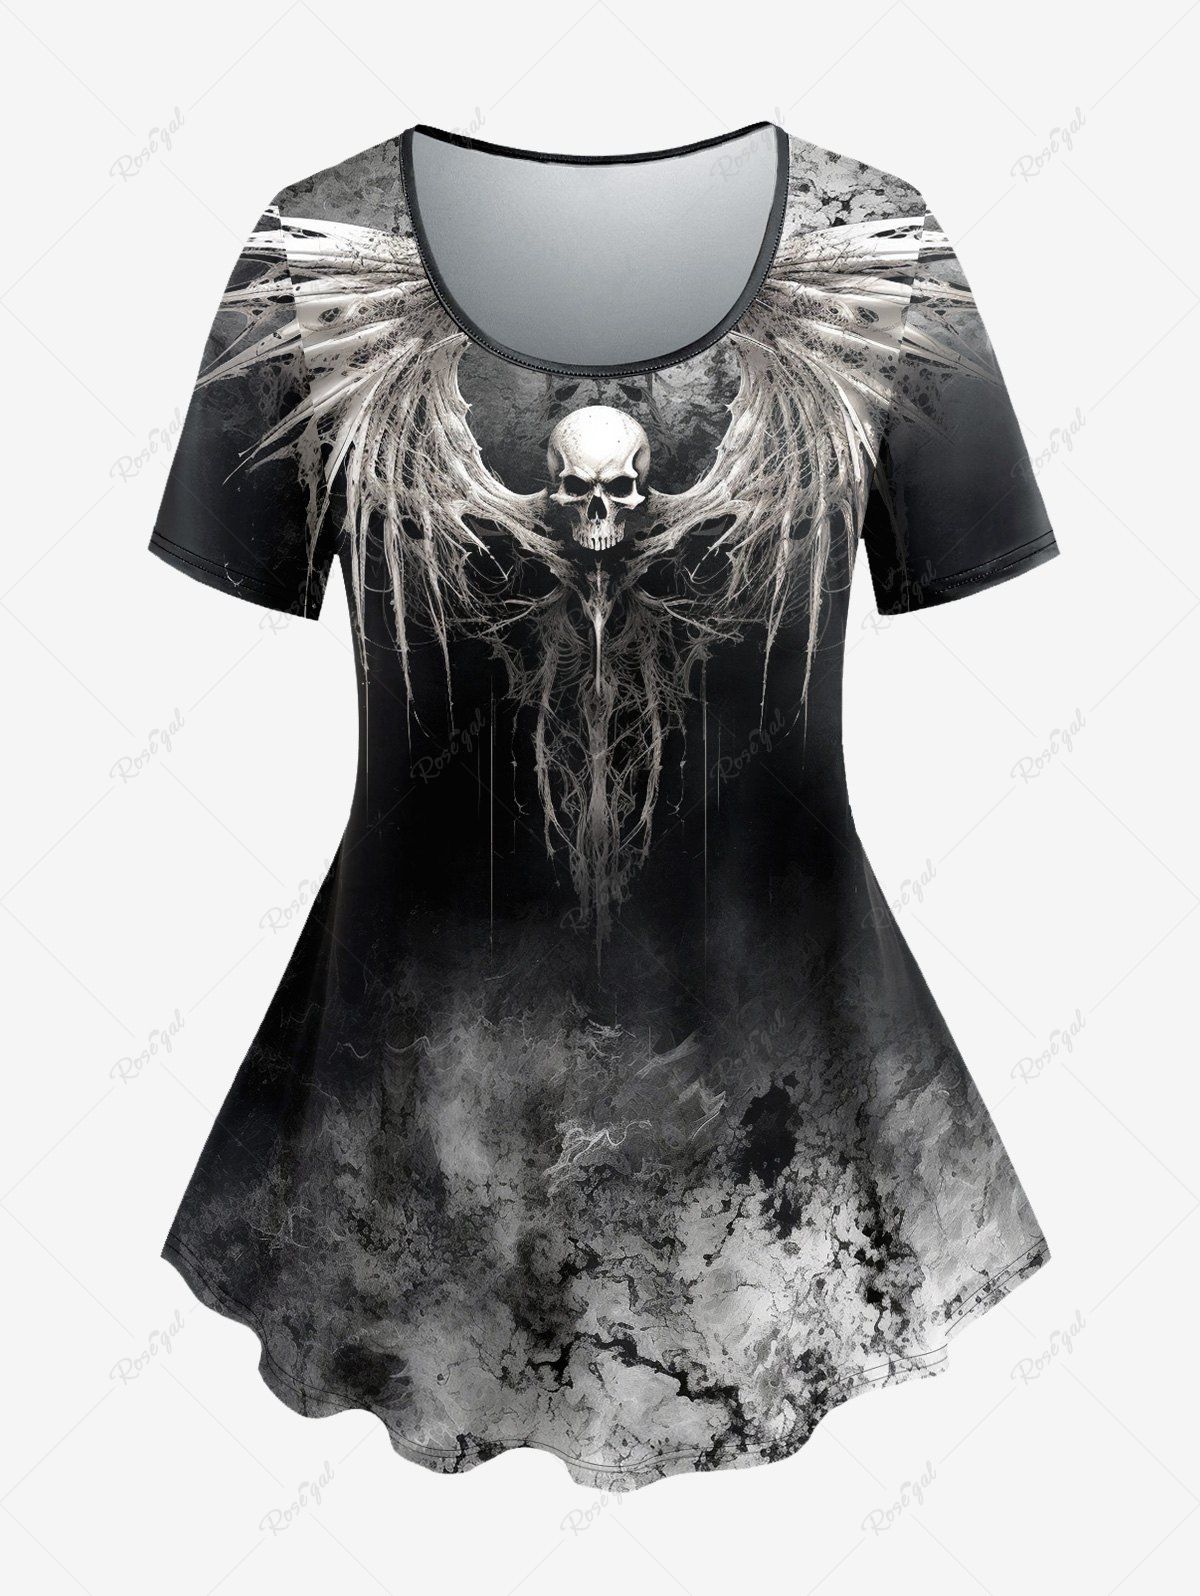 T-shirt D'Halloween Teinté Crâne Ombrée Style Gothique Noir L